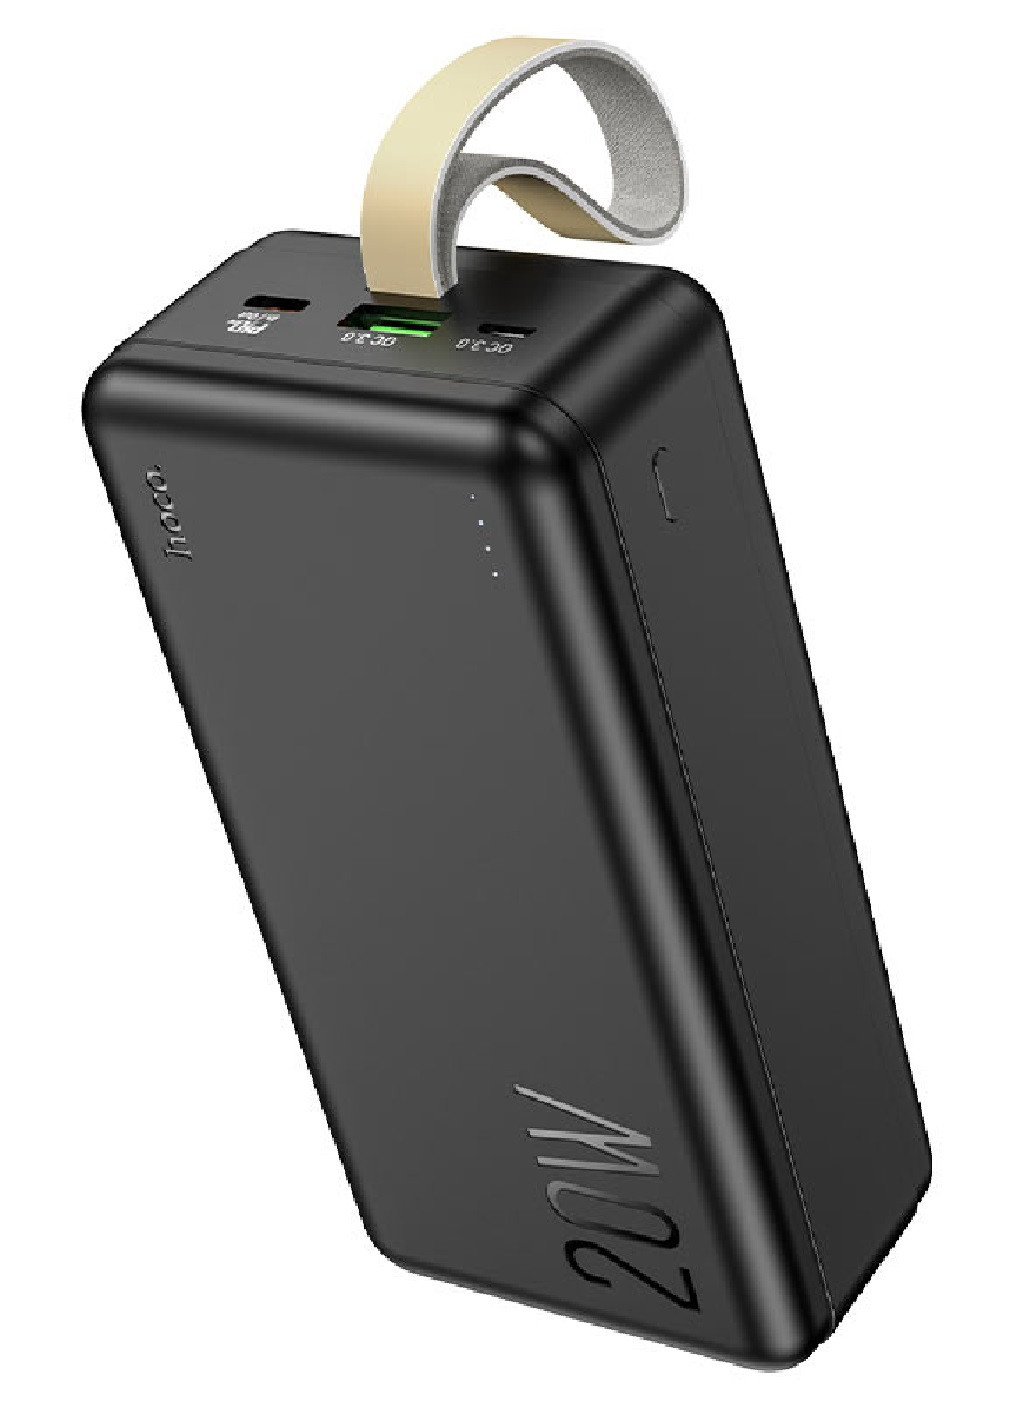 Power Bank универсальное зарядное устройство батарея внешний портативный аккумулятор 30000mAh (475037-Prob) Черный (павербанк) Unbranded